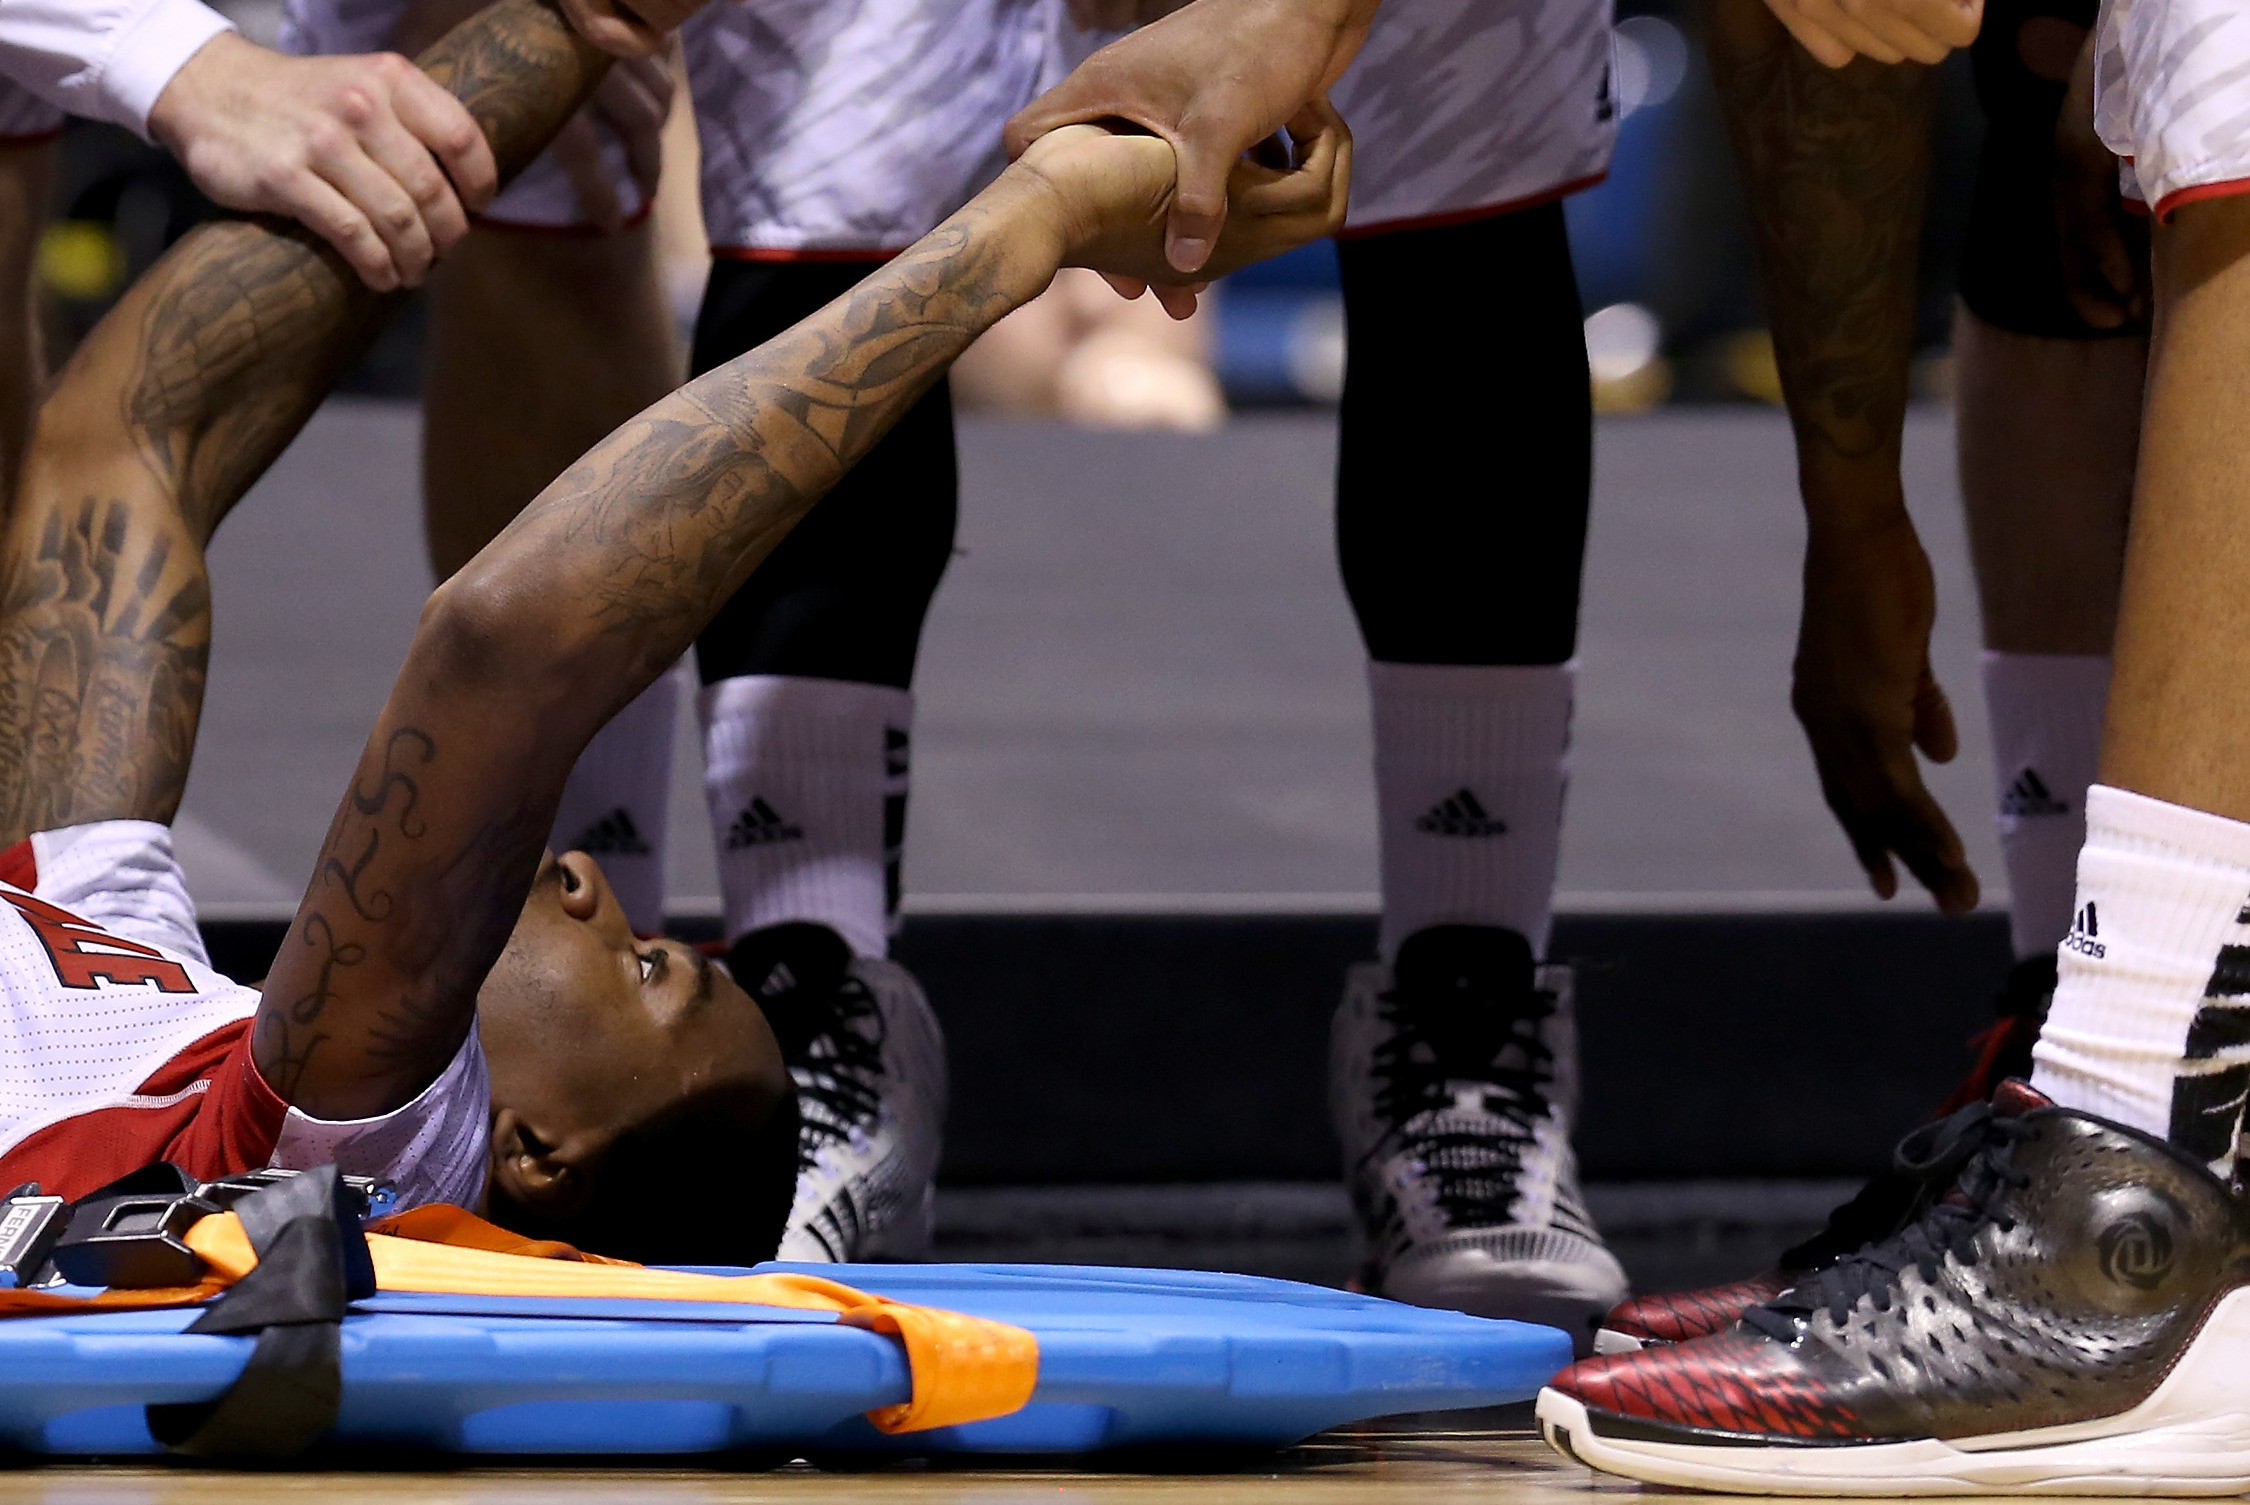 basketball player broken leg